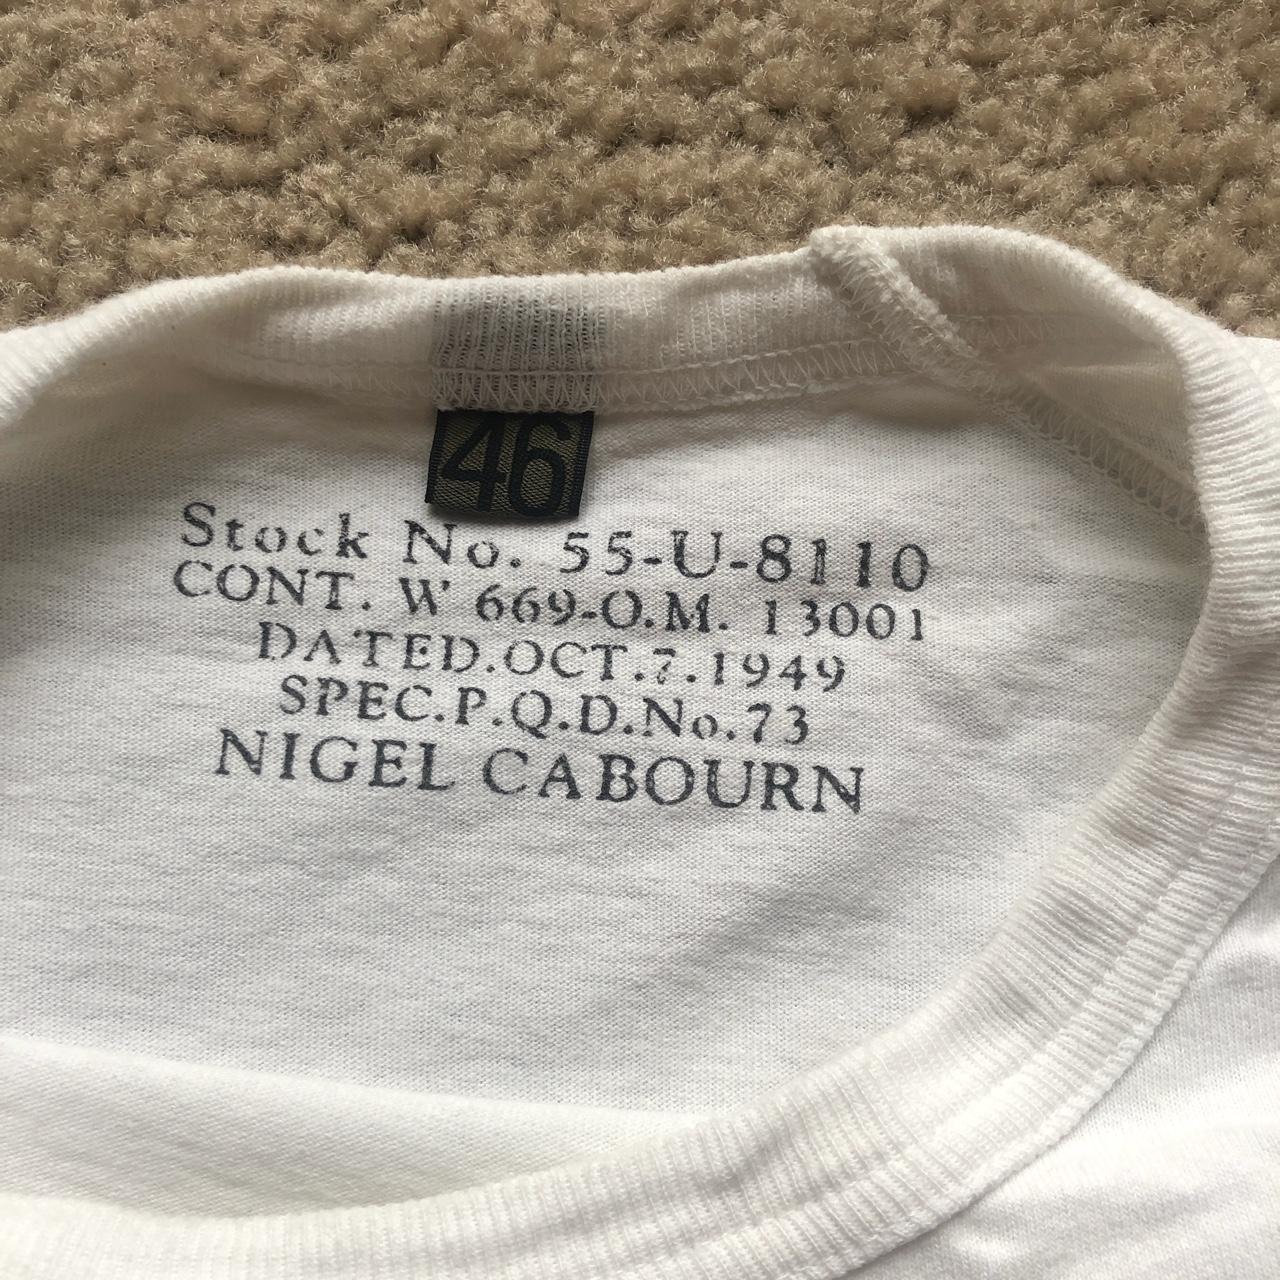 Product Image 3 - Vintage Nigel Cabourn white pocket